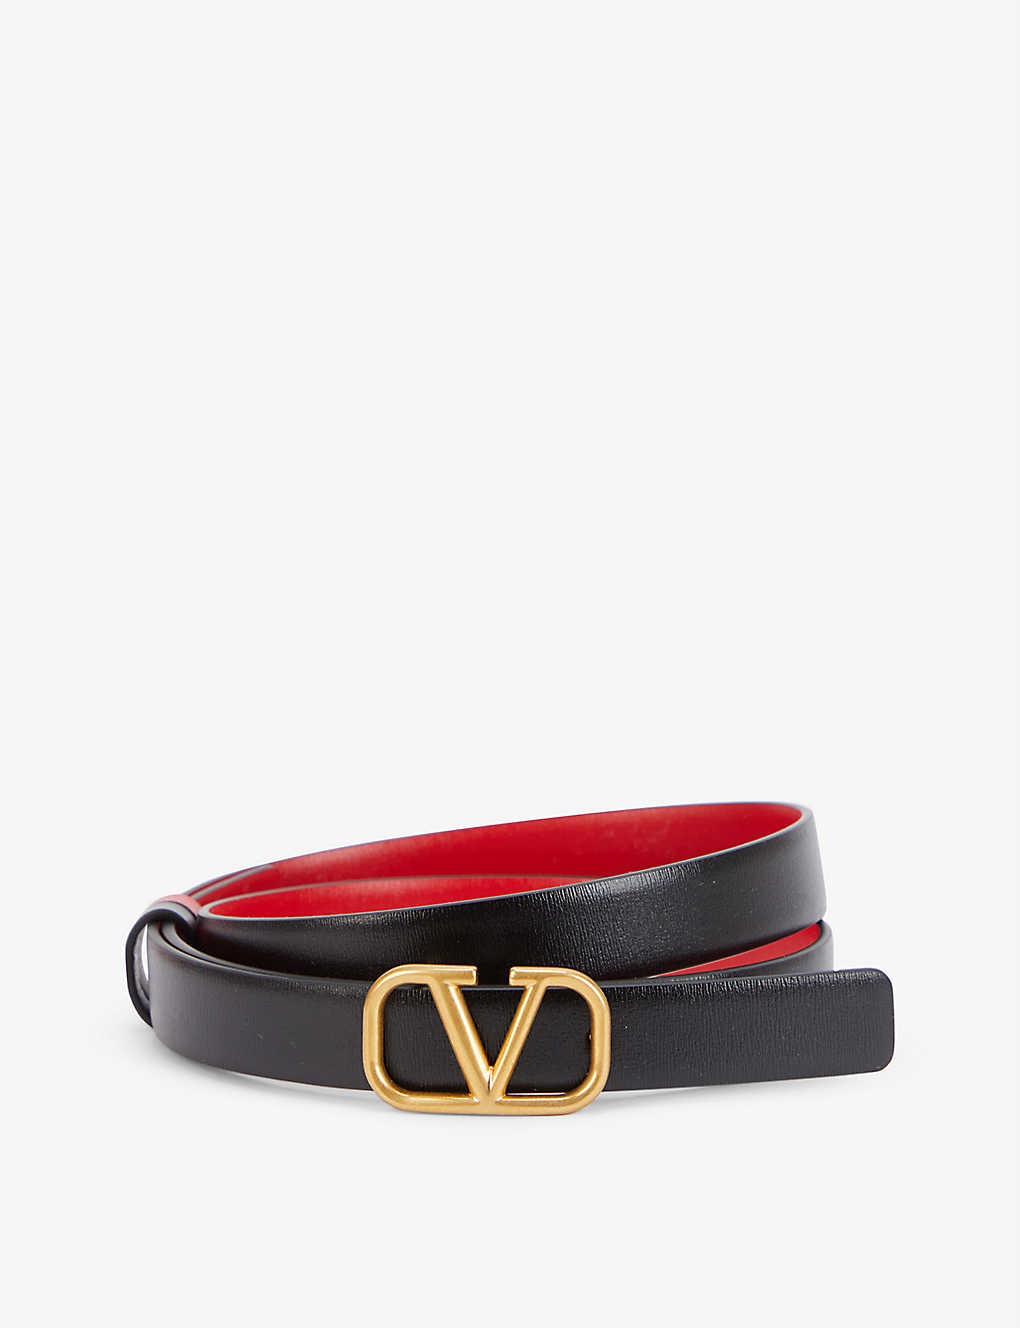 V-logo buckle slim reversible leather belt - 1